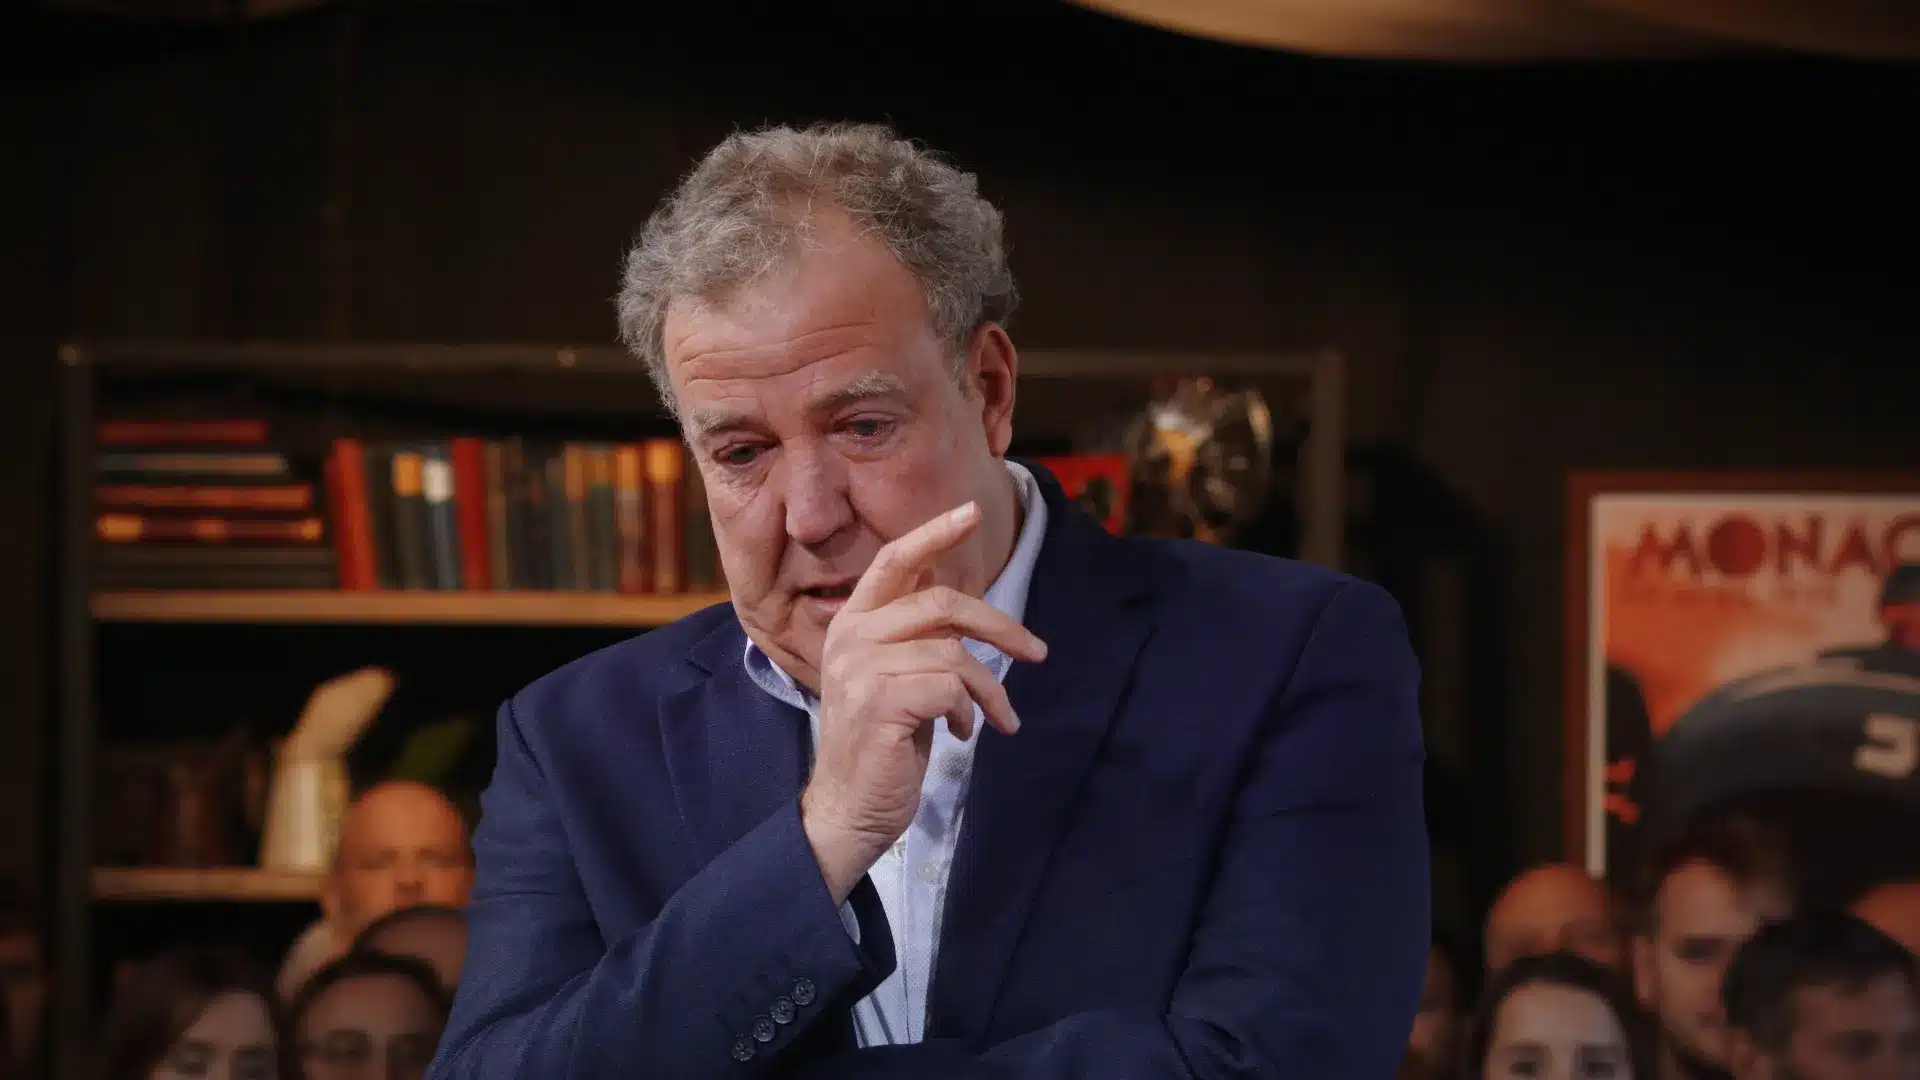 “Dall’anno prossimo addio a The Grand Tour”: l’annuncio shock di Jeremy Clarkson